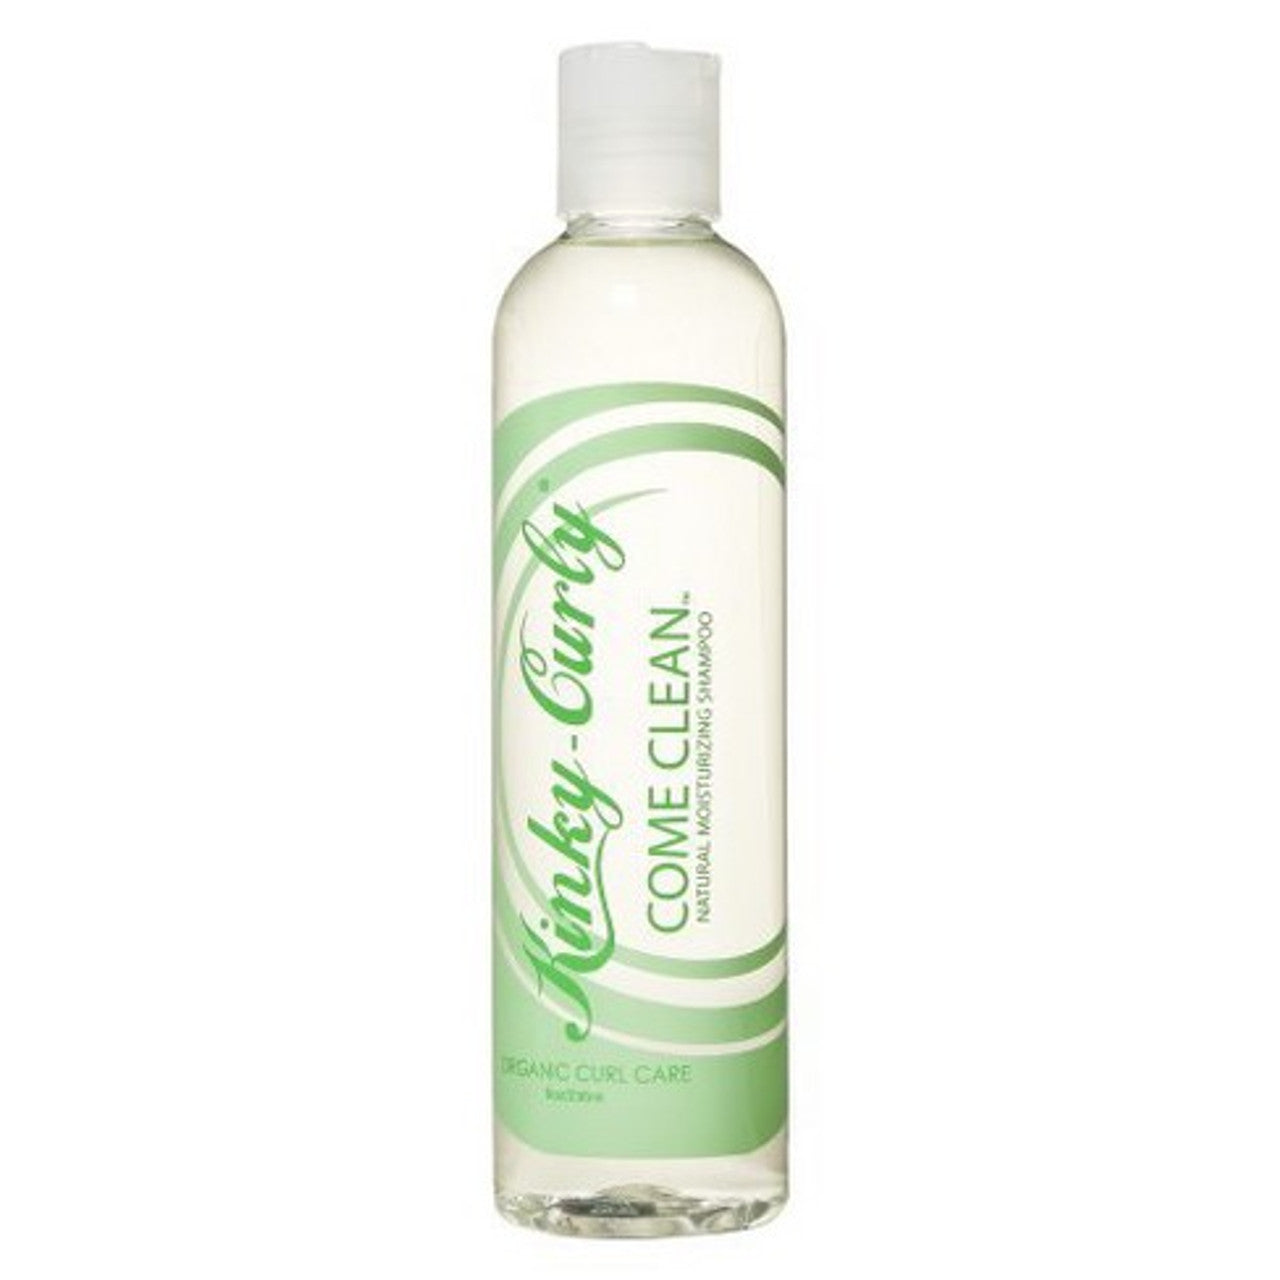 Kinky Curly ( come clean ) shampoo